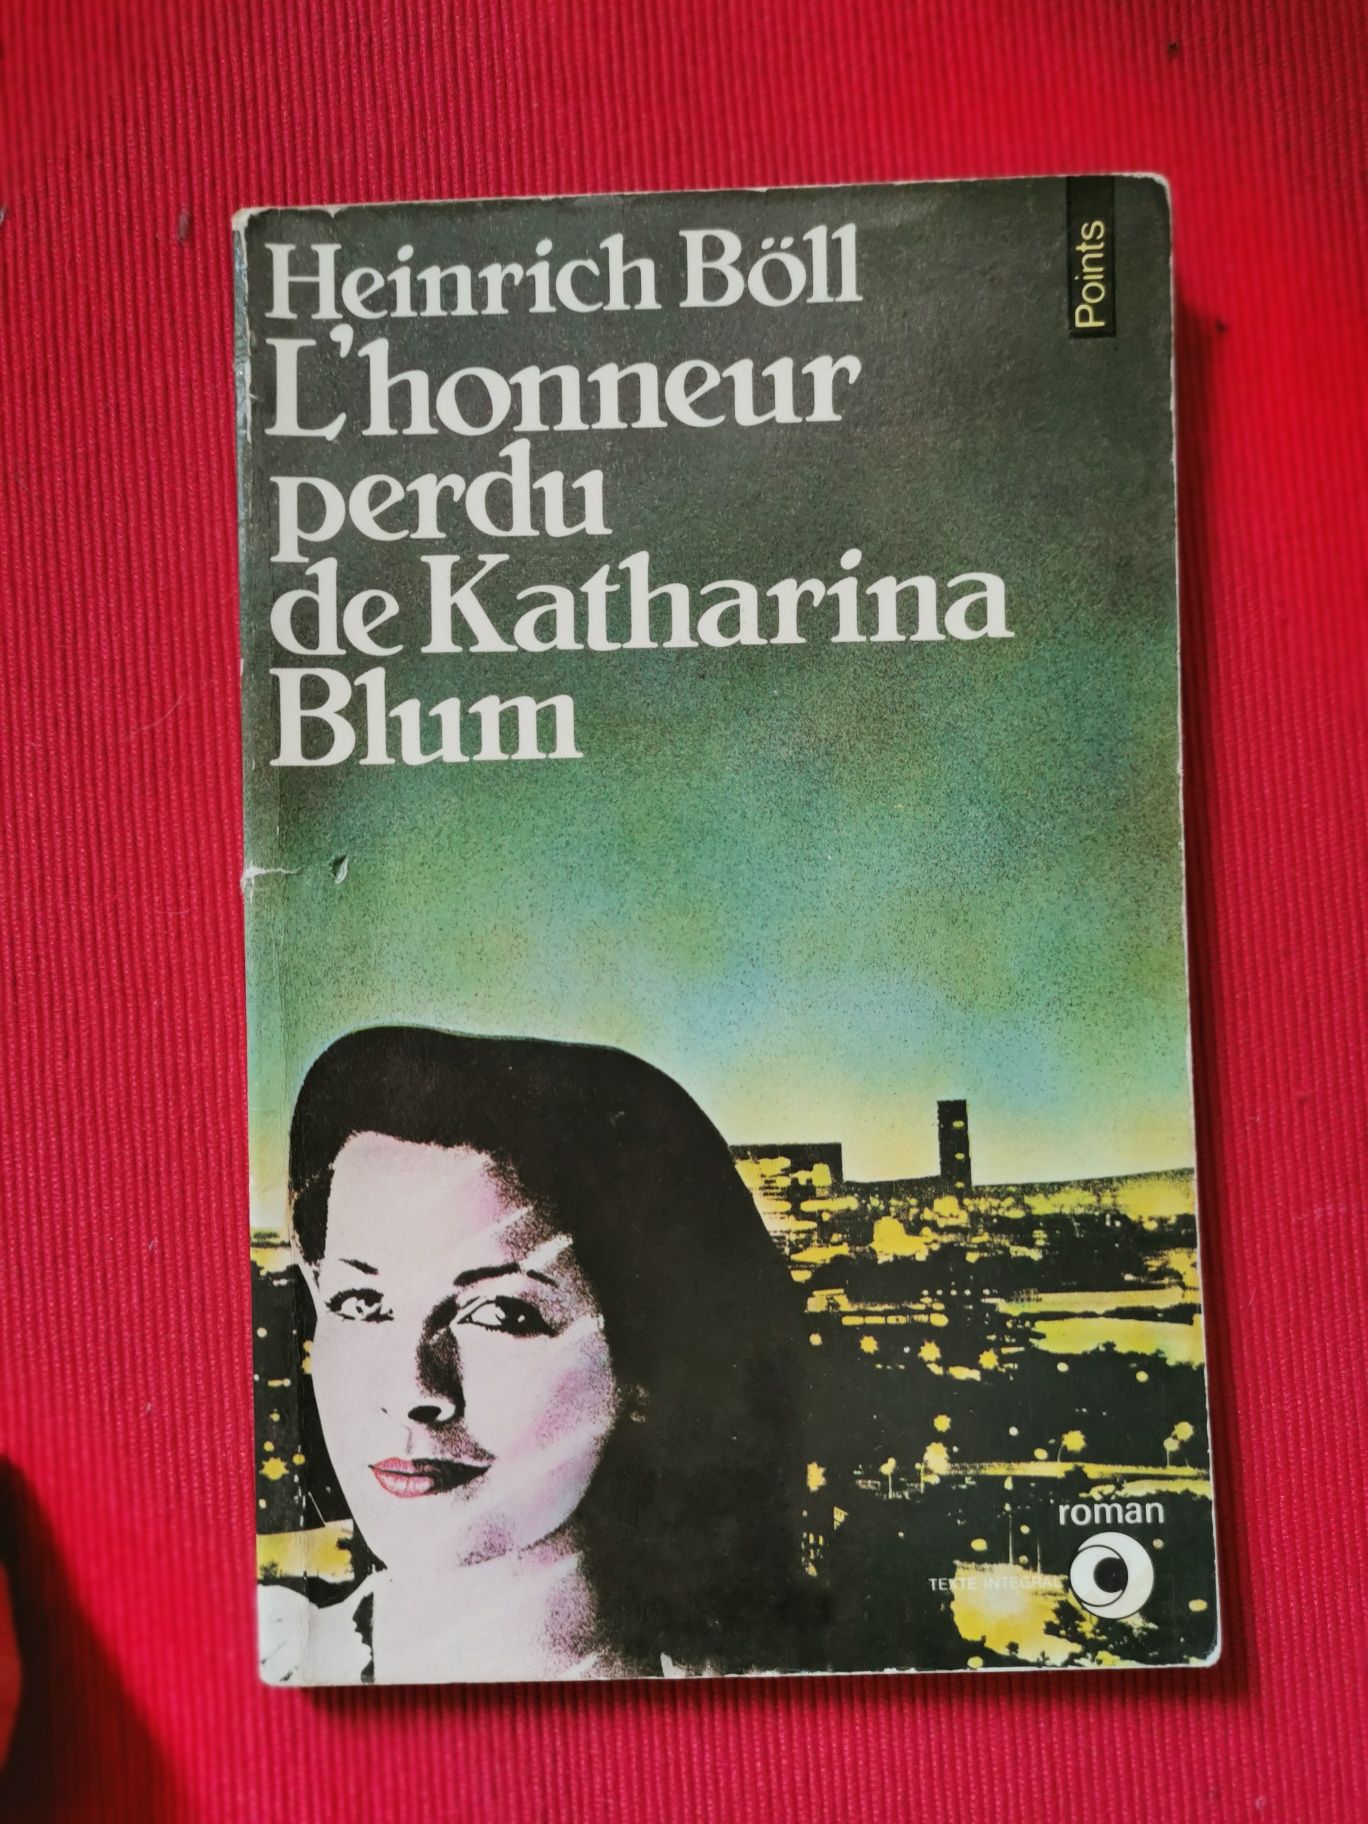 Heinrich Boll - L'honneur perdu de Katharina Blum